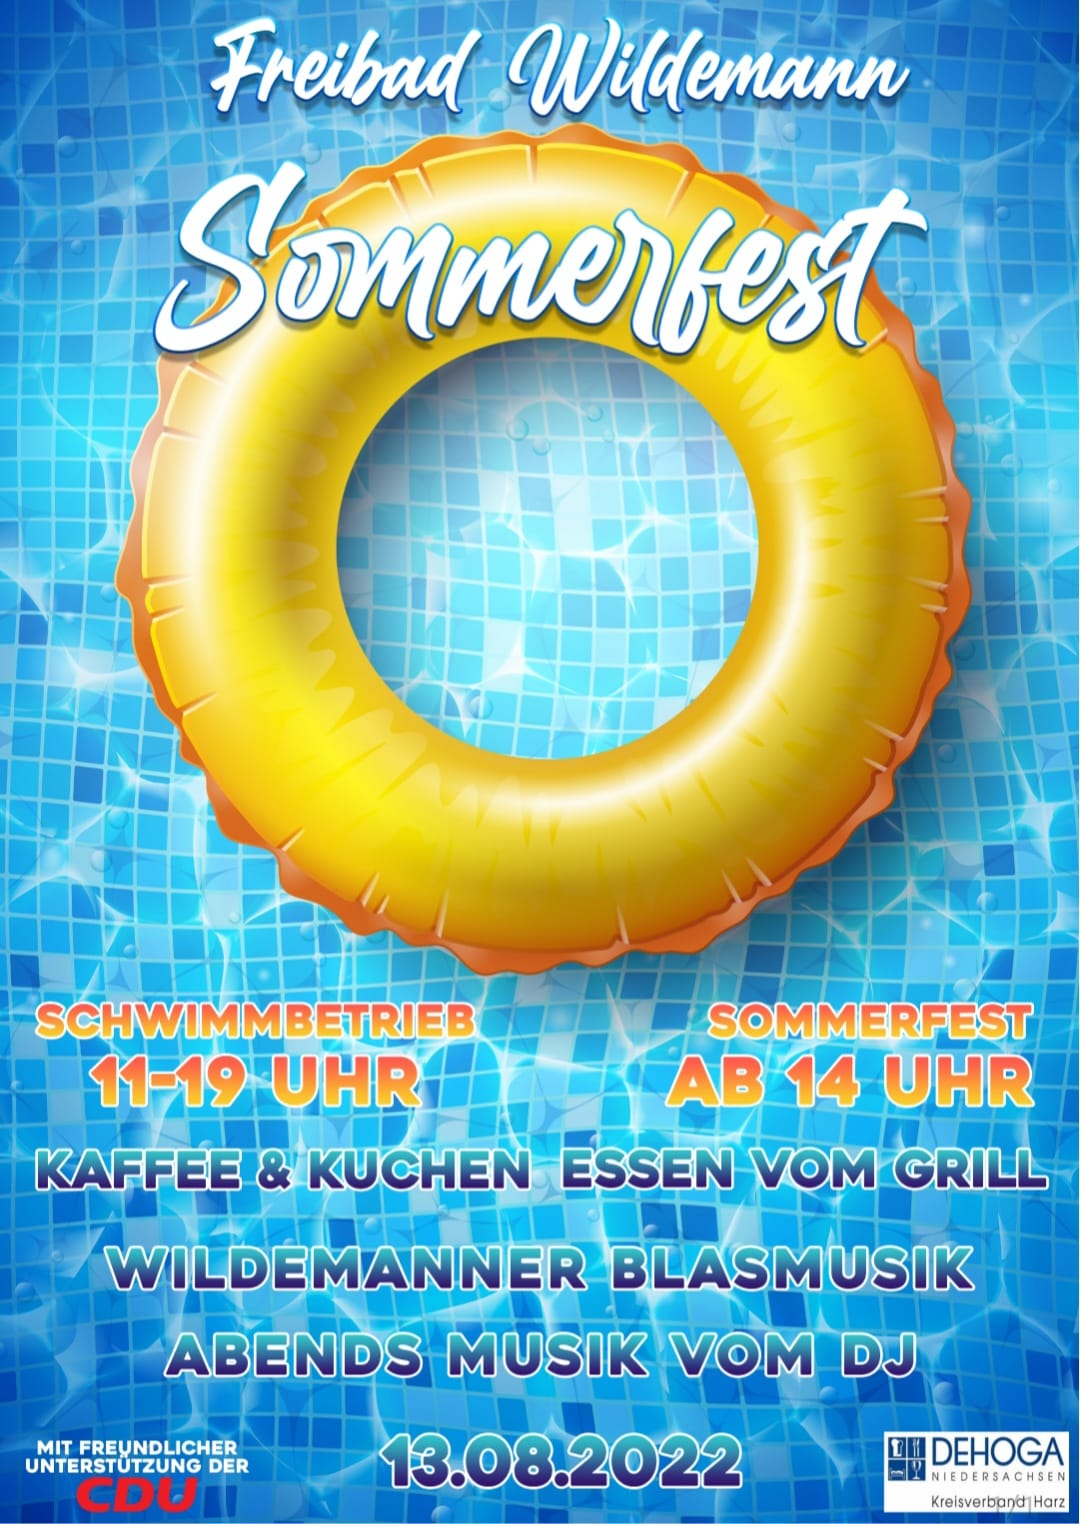 Bild "Spiegelbad:Sommerfest.jpg"